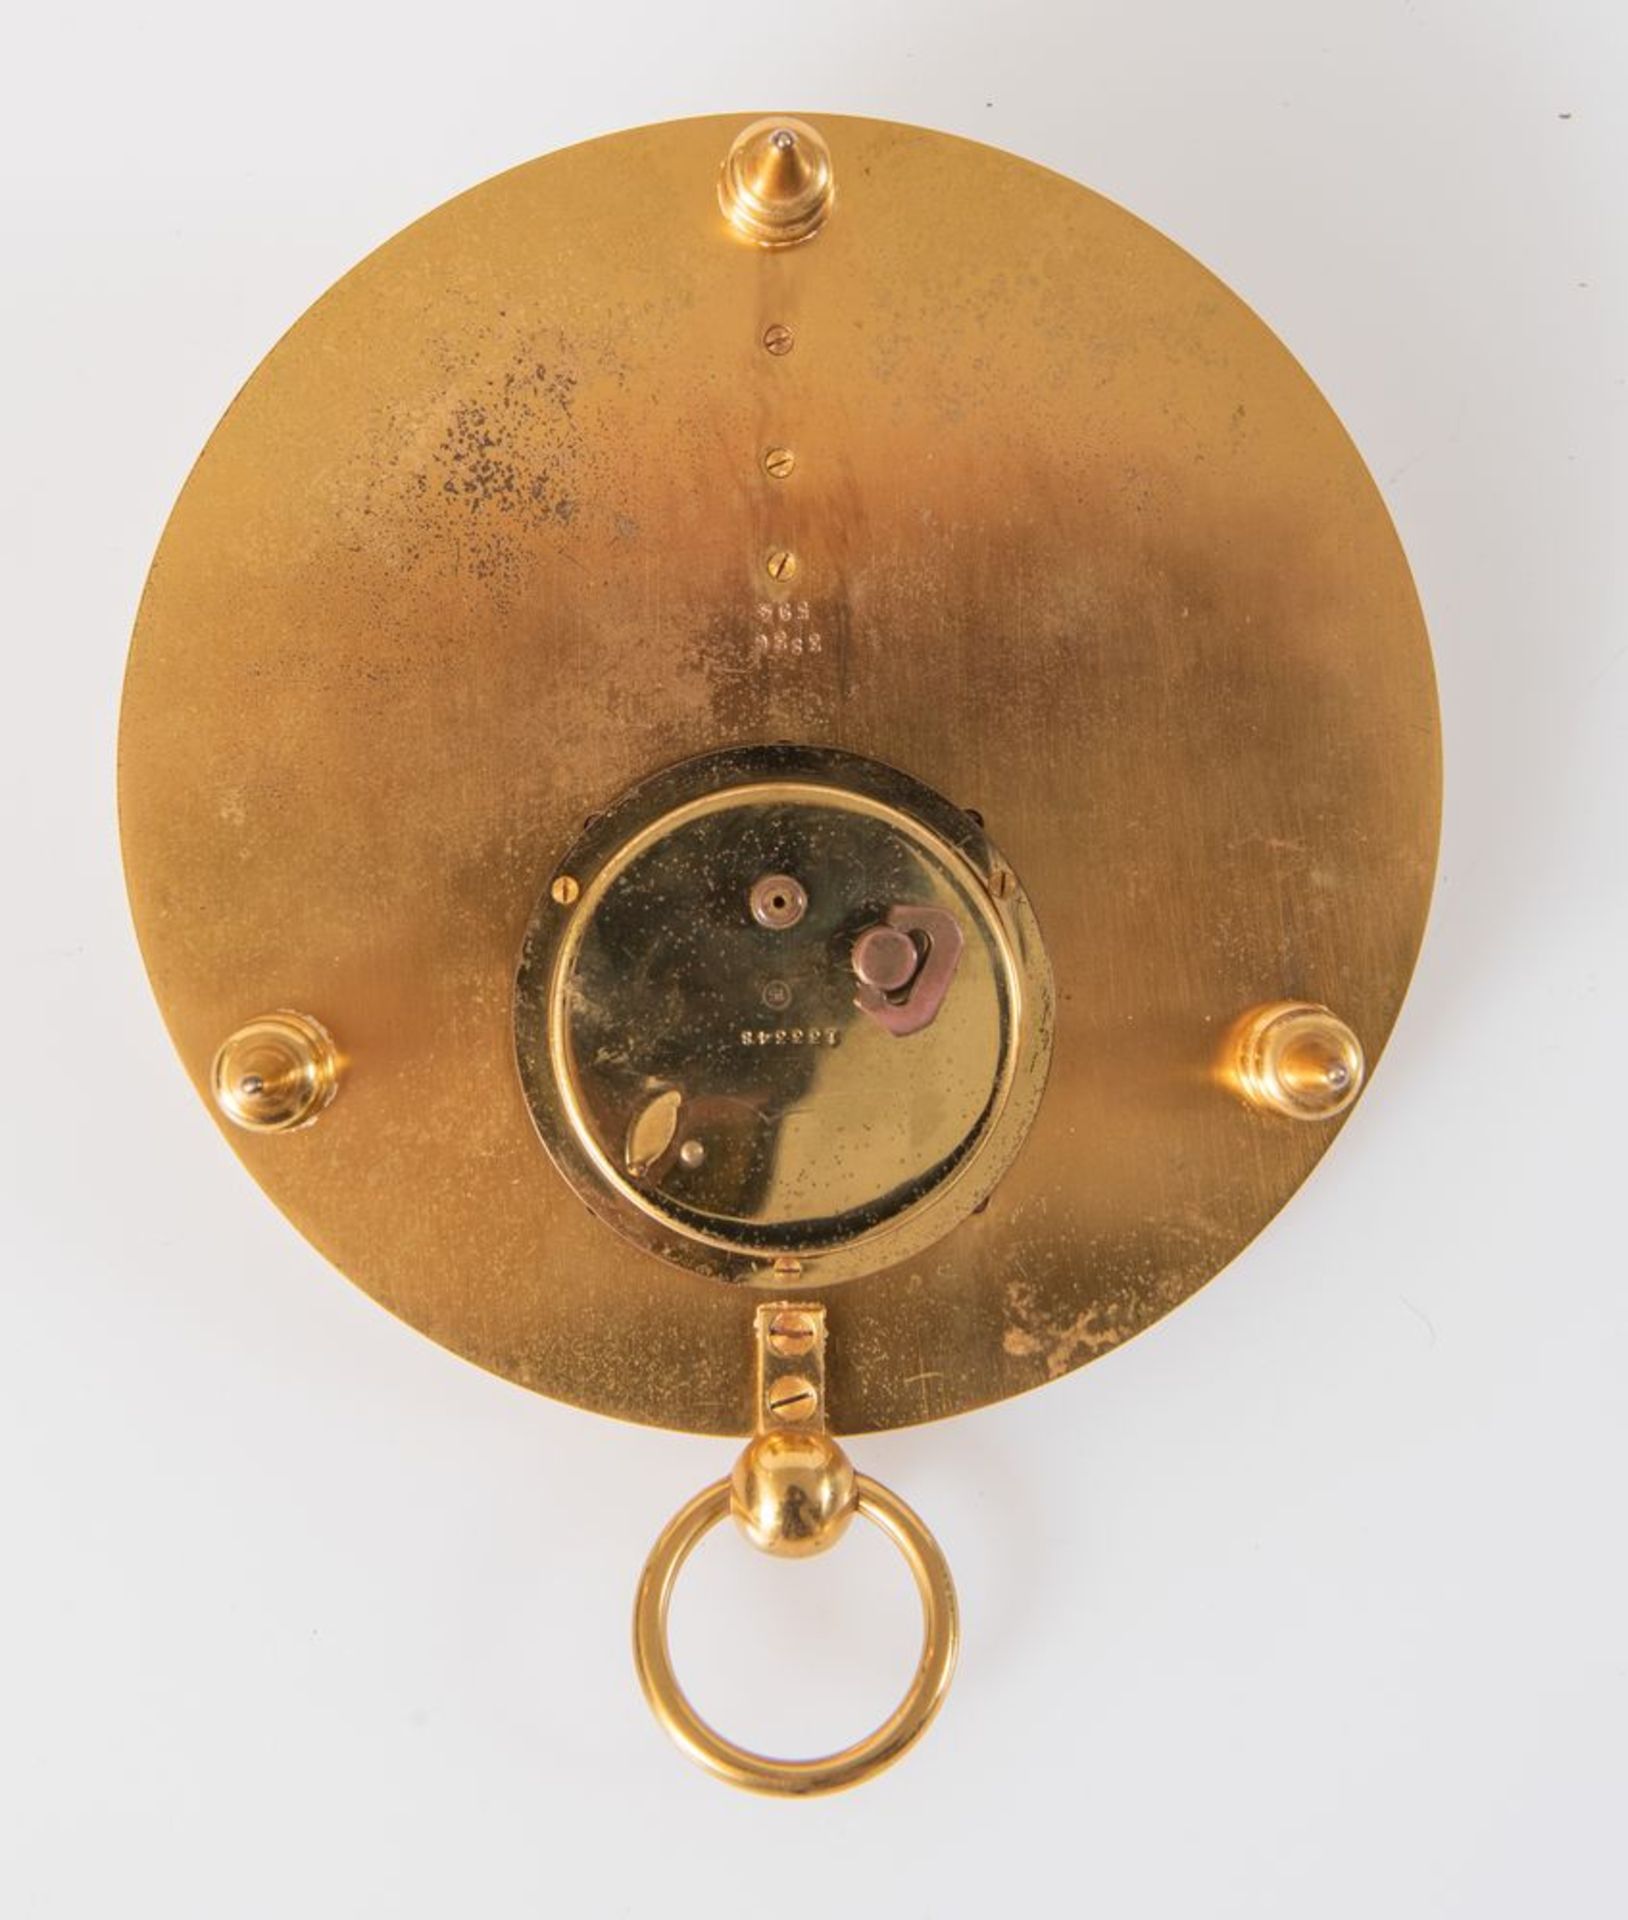 Orologio da tavola in bronzo dorato, di produzione moderna ad imitazione dell'antico. Cm 7,5x15, - Bild 2 aus 2